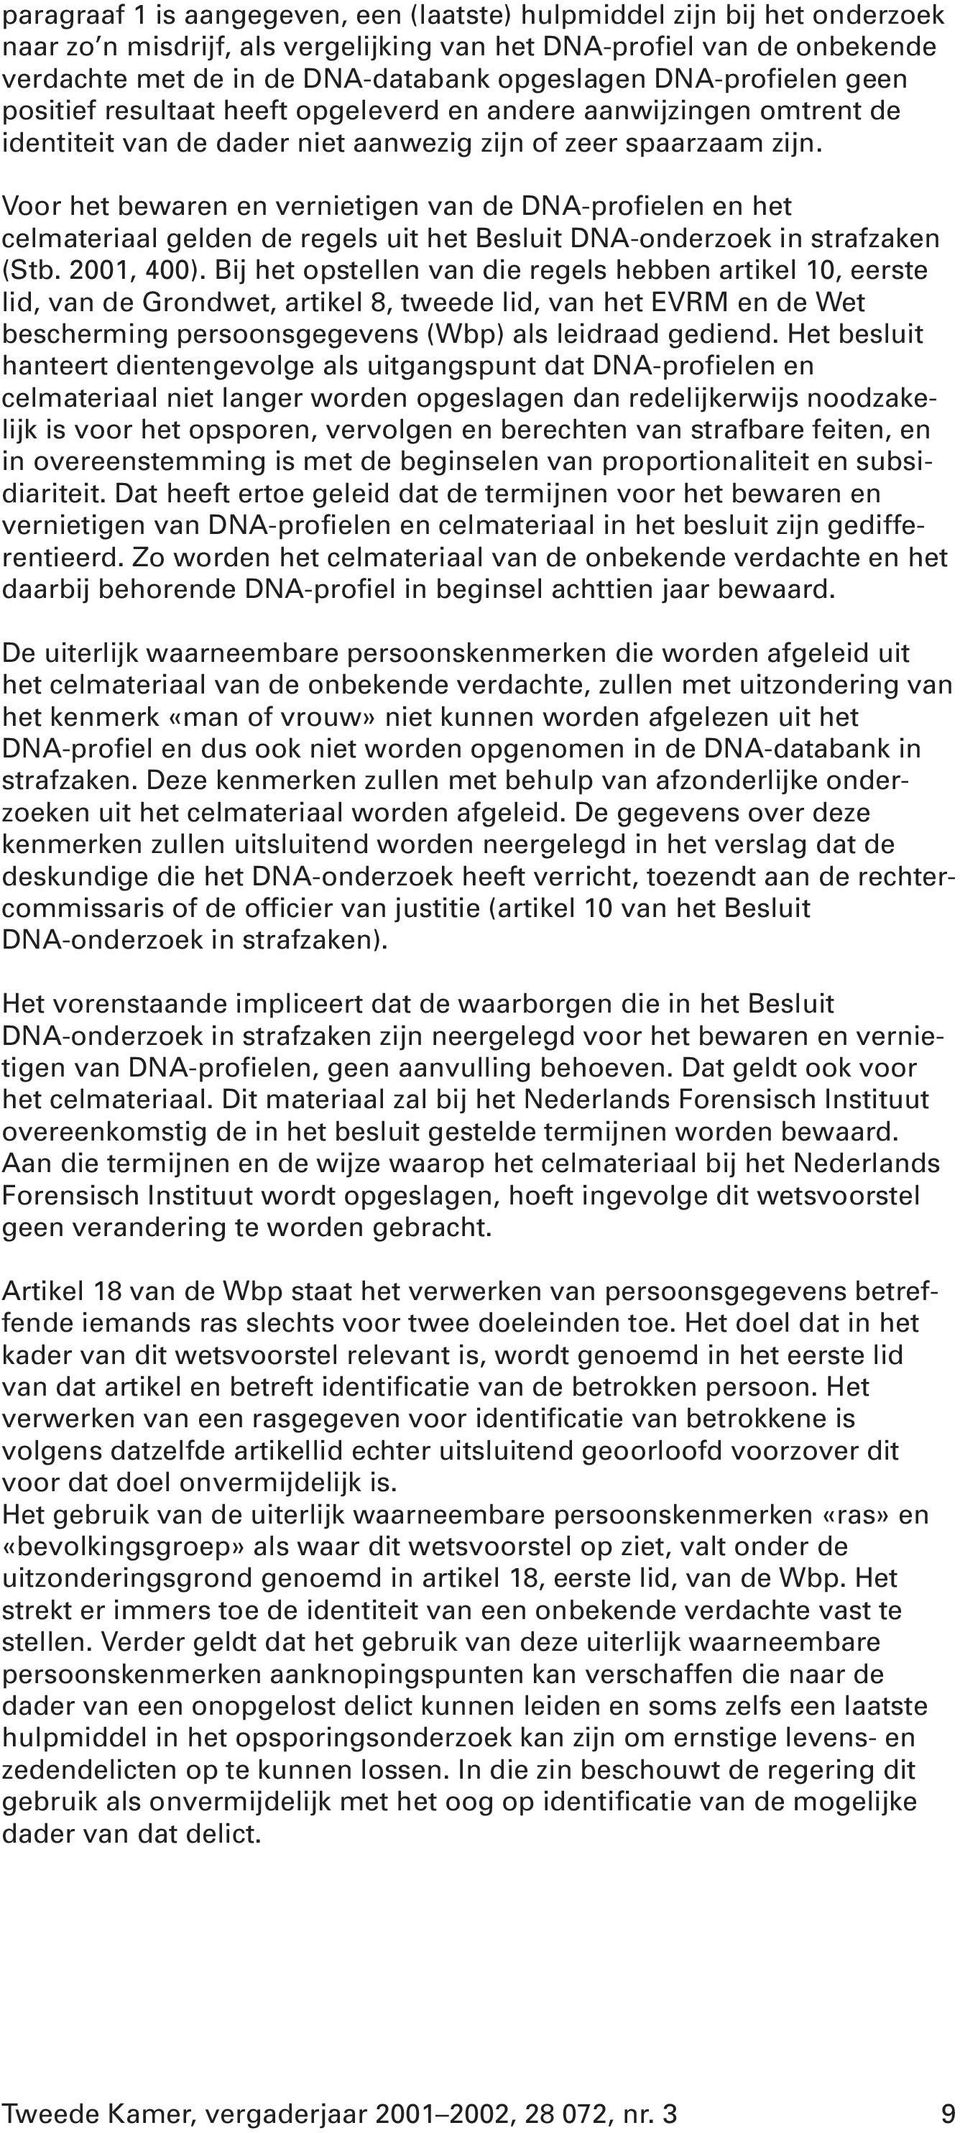 Voor het bewaren en vernietigen van de DNA-profielen en het celmateriaal gelden de regels uit het Besluit DNA-onderzoek in strafzaken (Stb. 2001, 400).